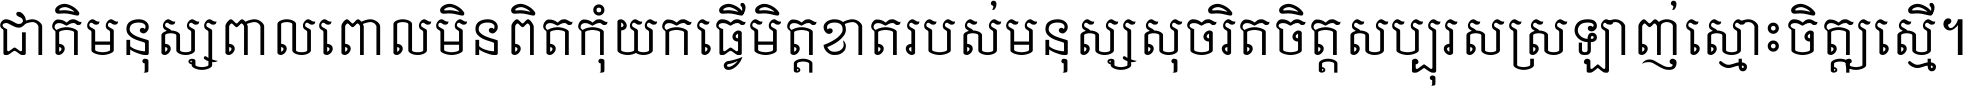 Khmer Mondulkiri A space